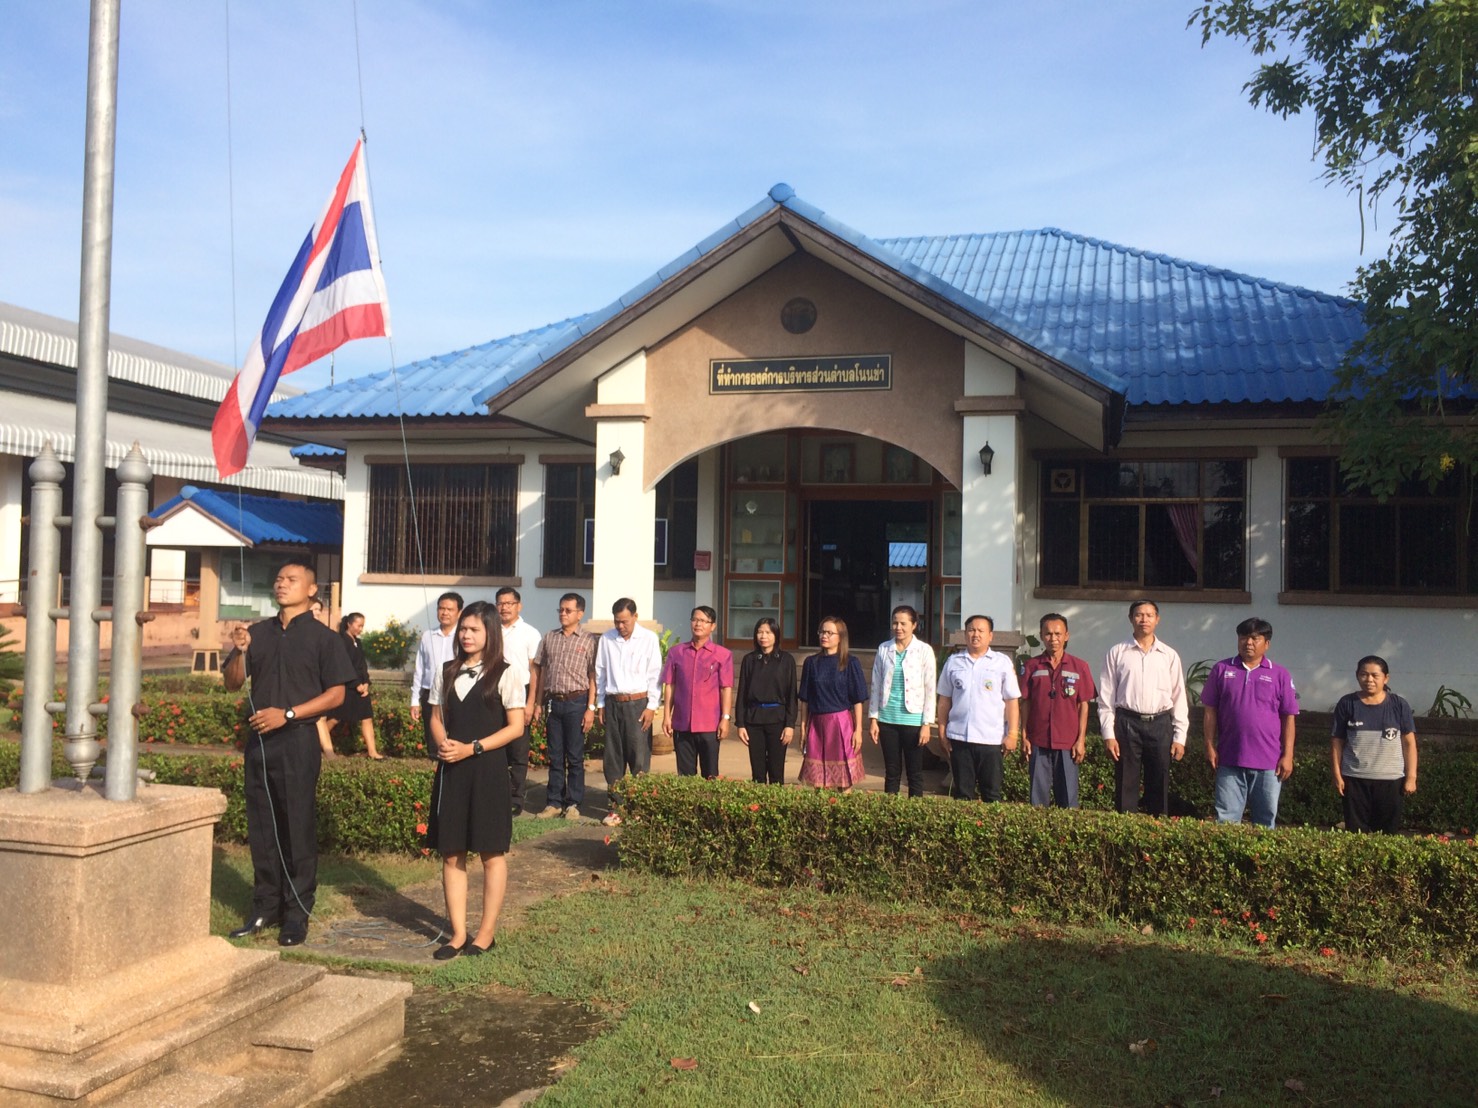 กิจกรรมเข้าแถวเคารพธงชาติ เนื่องในวันพระราชทานธงชาติไทย ครบ 100 ปี  วันที่  28 กันยายน 2560